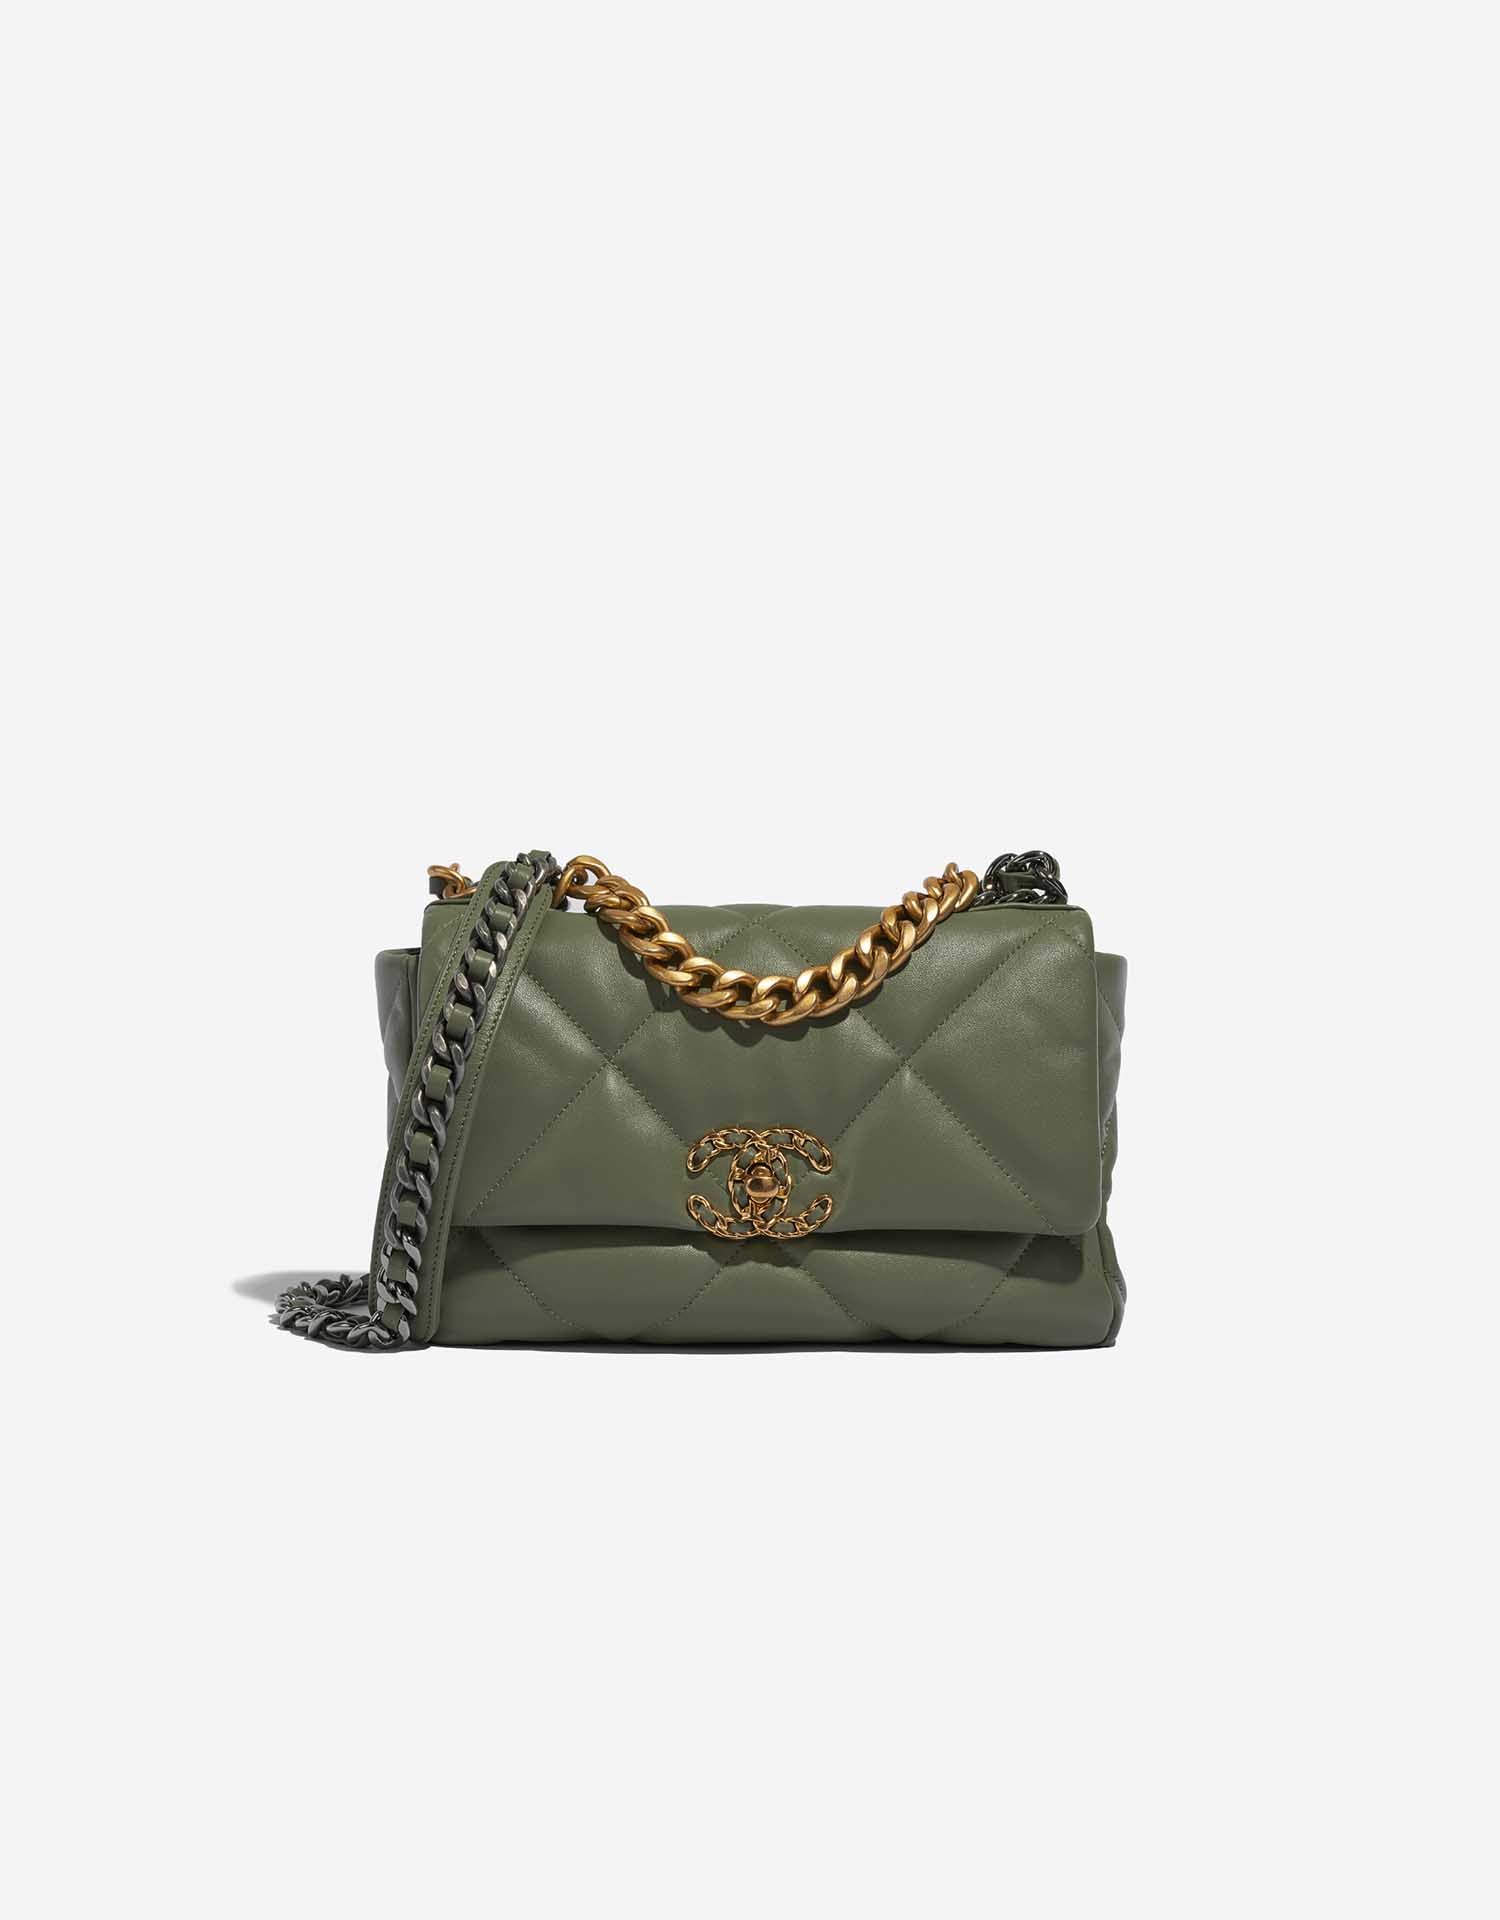 Chanel 19 Flap Bag Lamb Green | SACLÀB